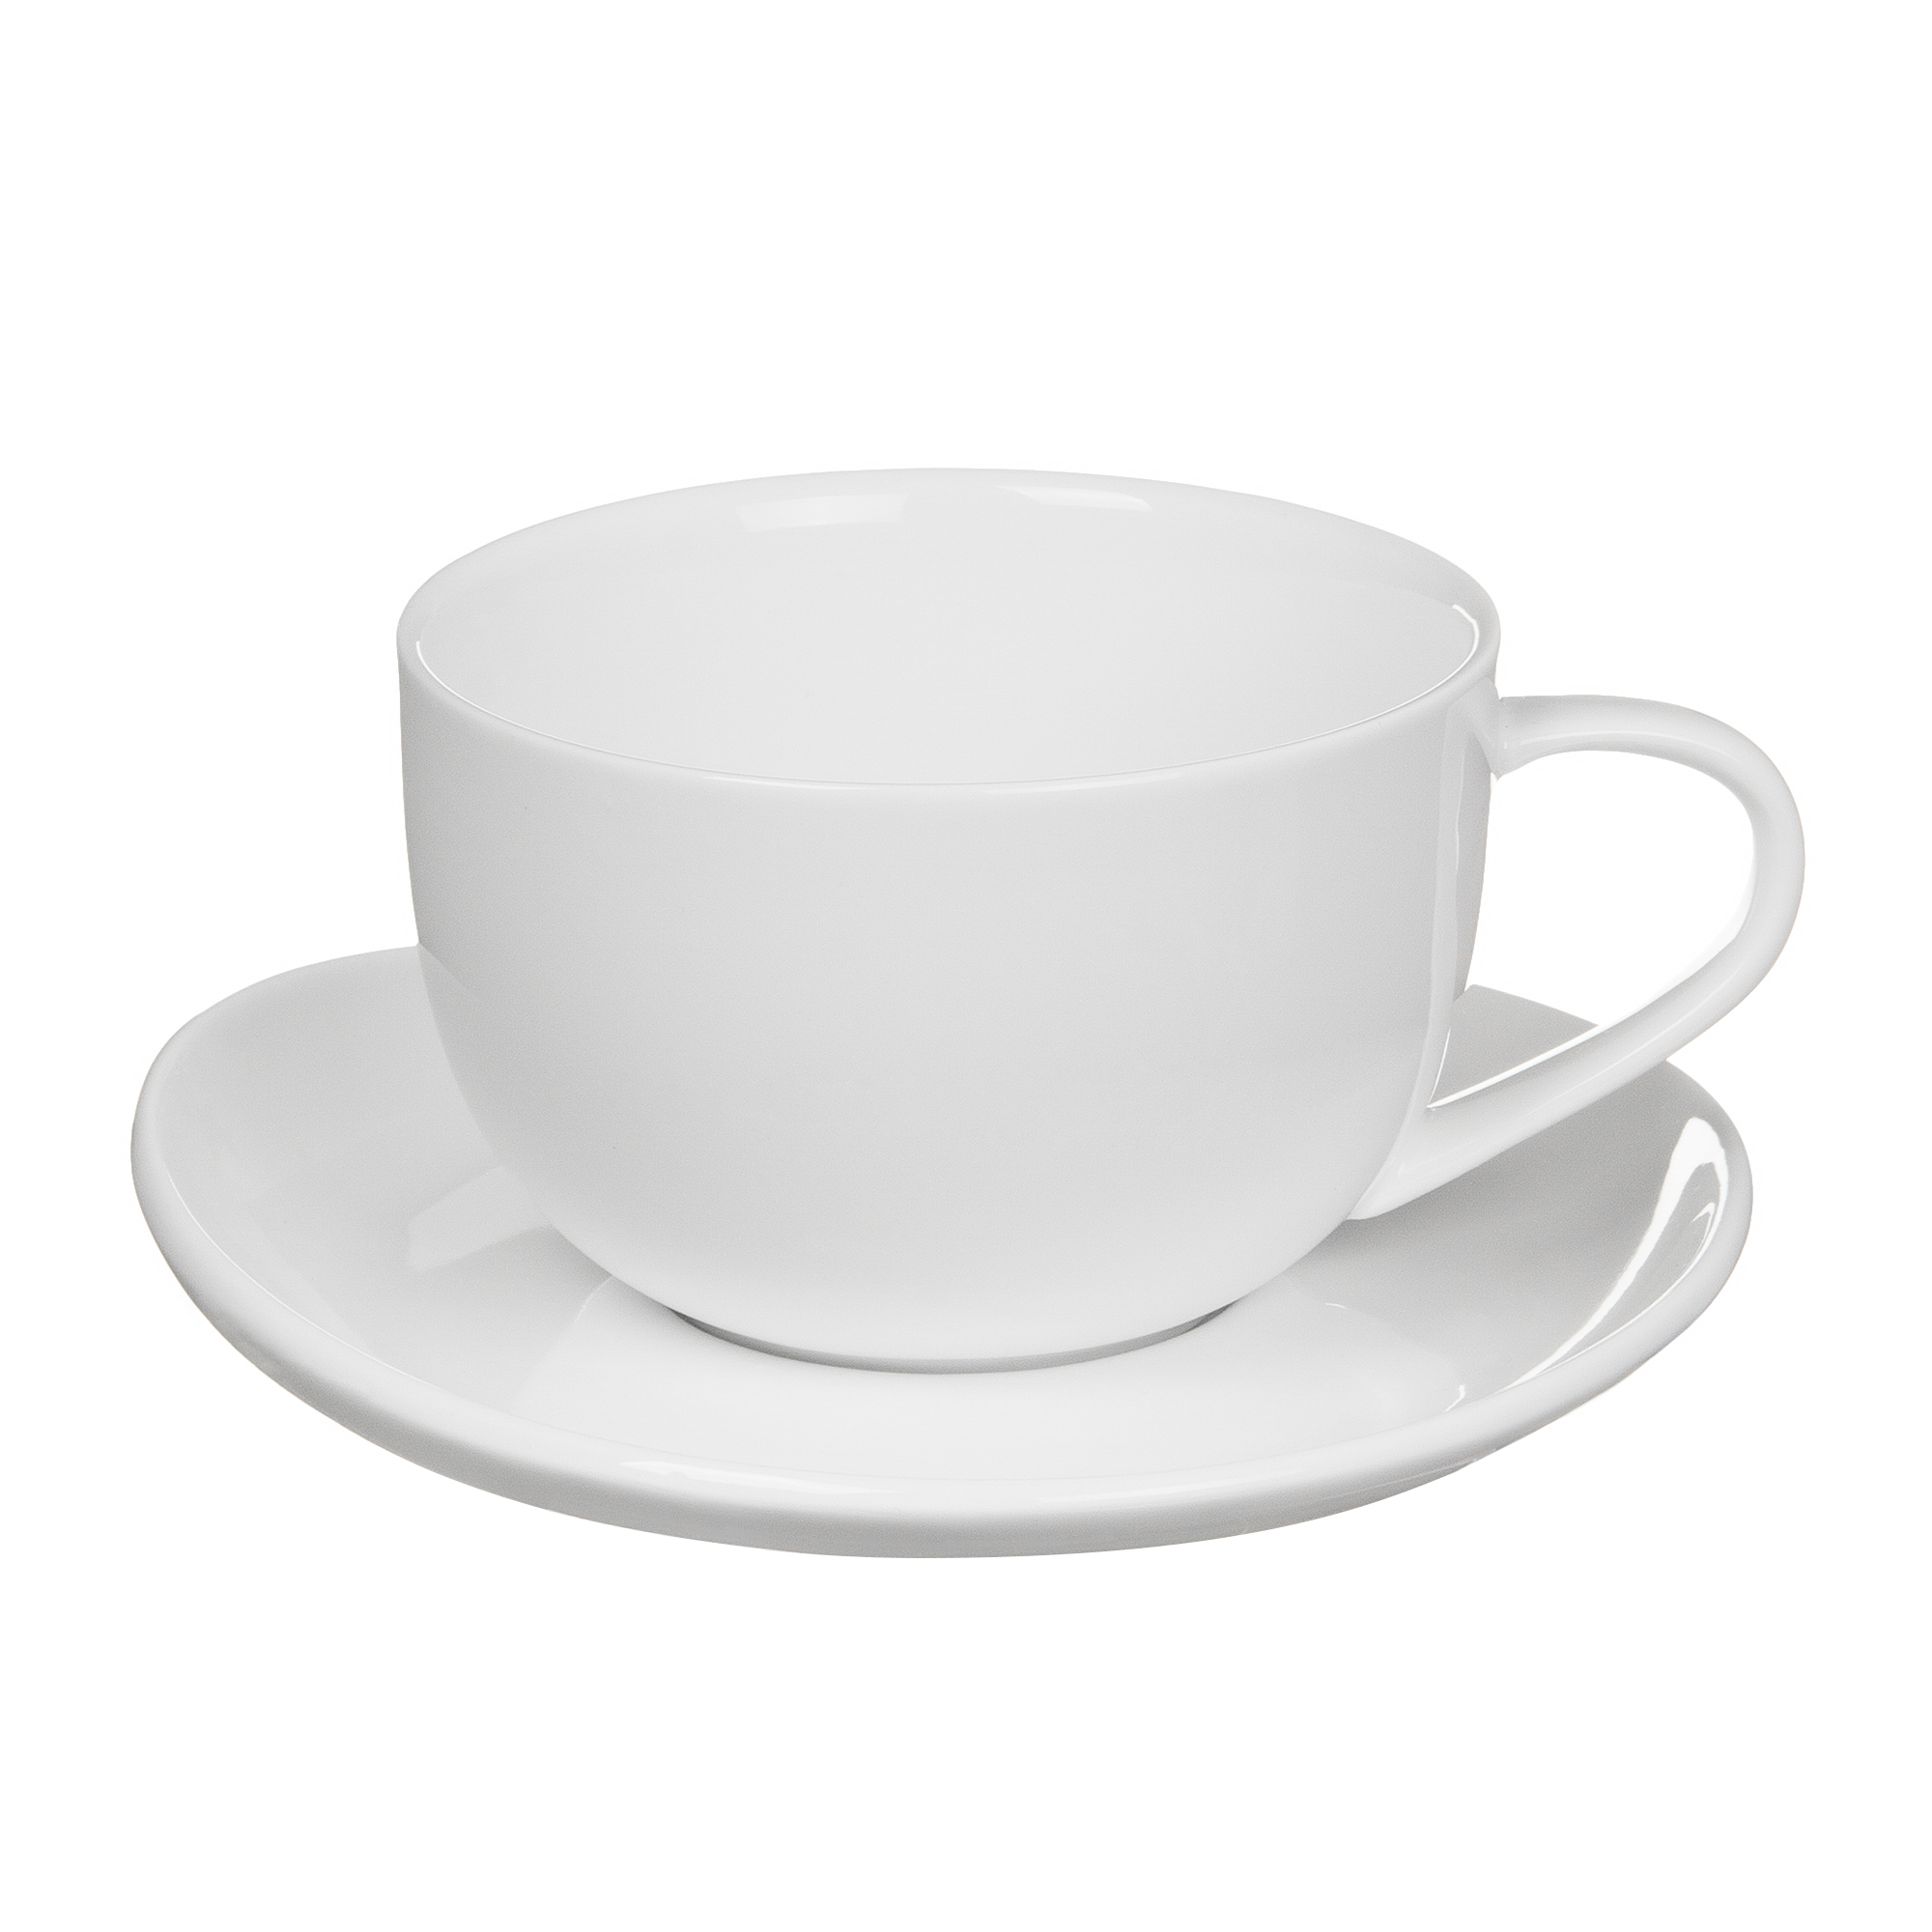 Пара чайная чашка + блюдце 350 мл Tudor TU9999-4 пара кофейная чашка блюдце 90 мл tudor